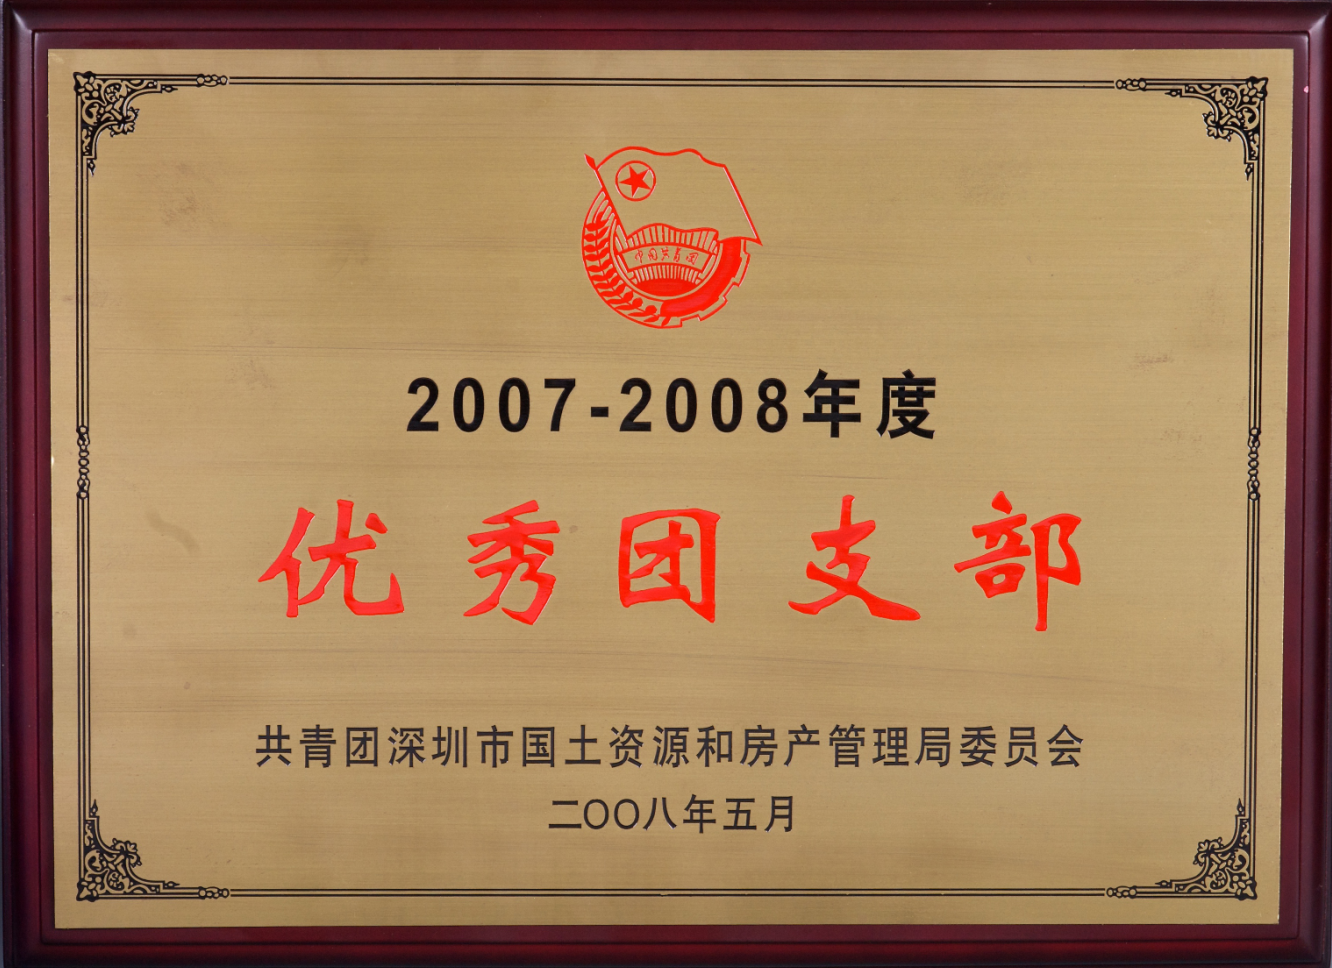 2007-2008年度优秀团支部